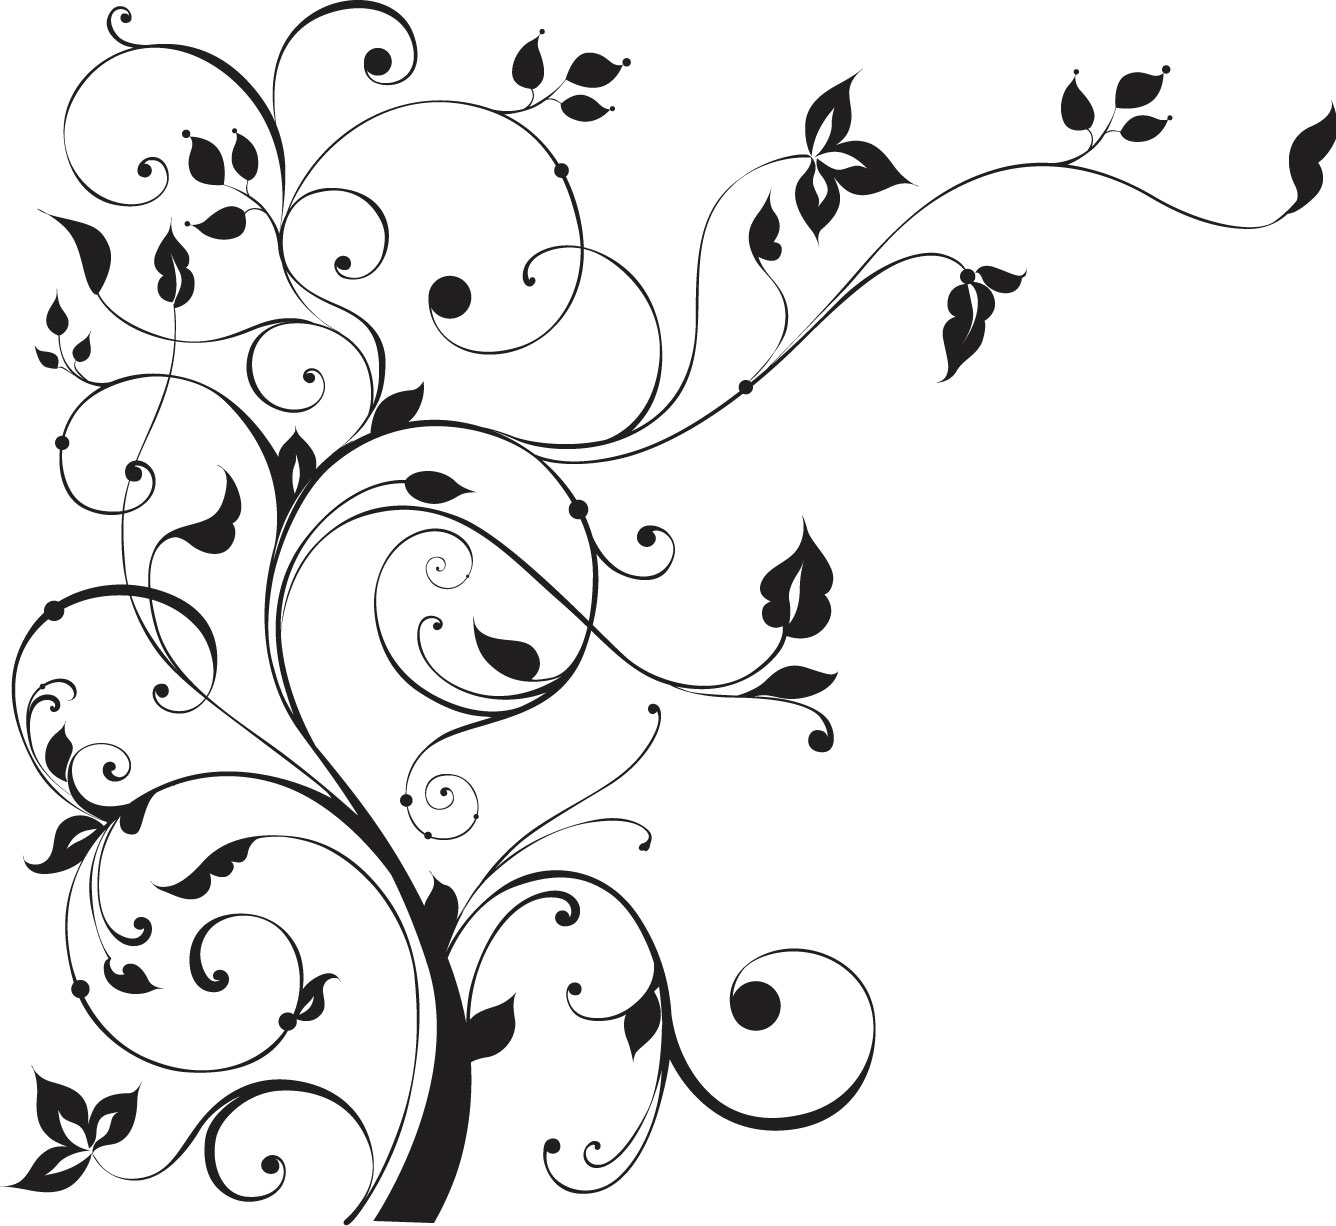 葉っぱや草木のイラスト 画像 フリー素材 白黒no 452 木 枝葉 蔓